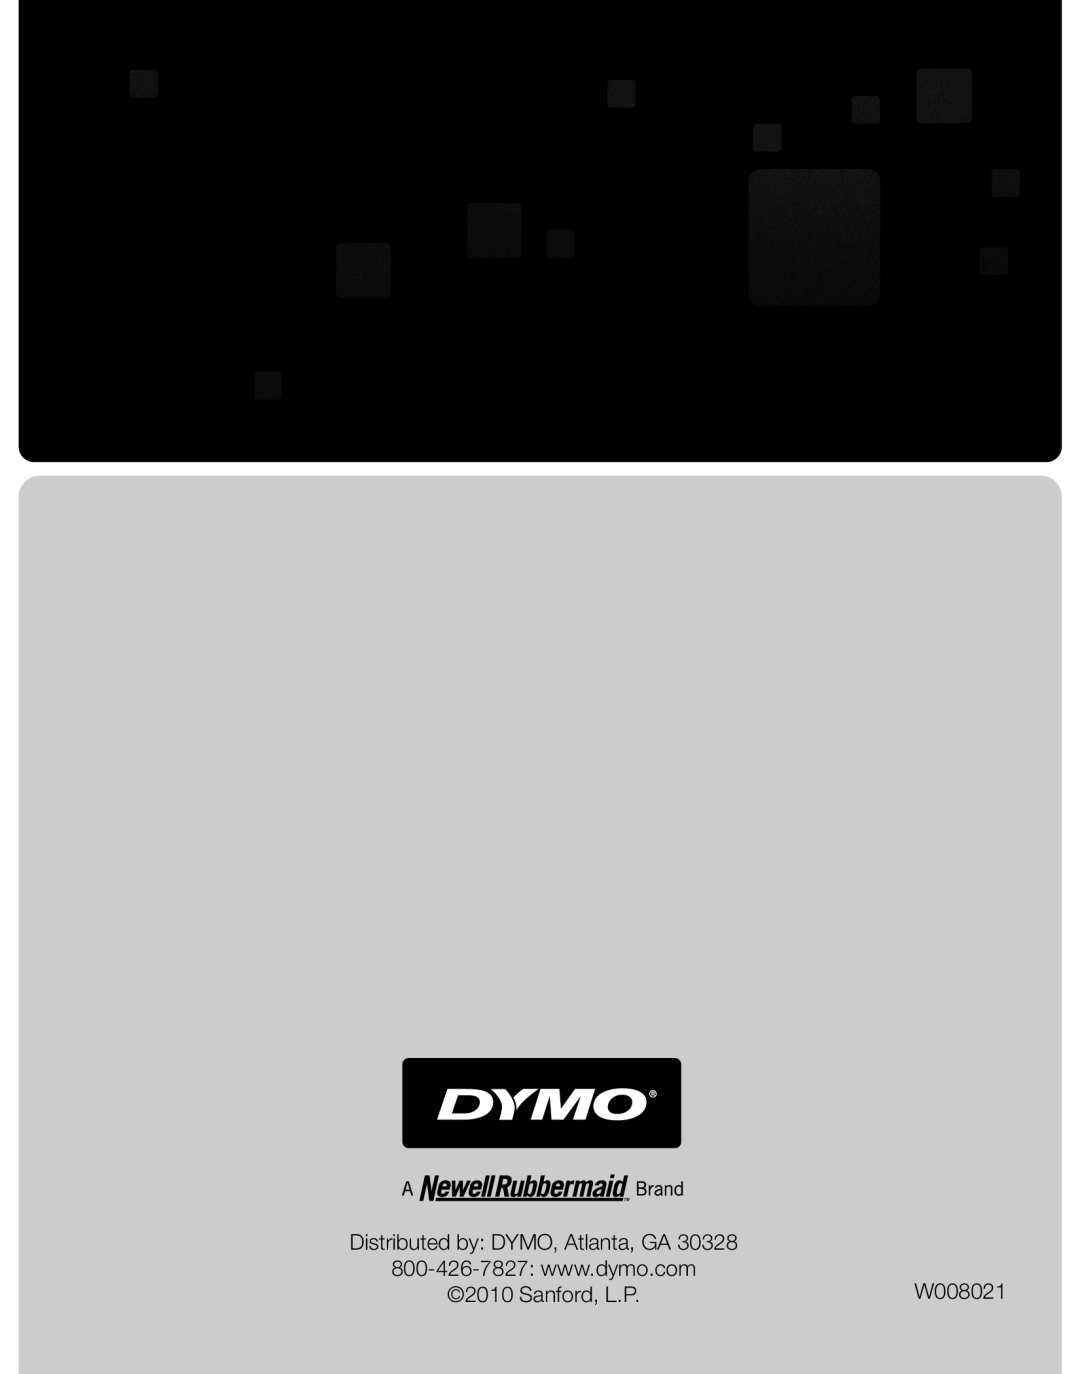 Dymo M25, M10 manual W008021, Distributed by DYMO, Atlanta, GA, Sanford, L.P 